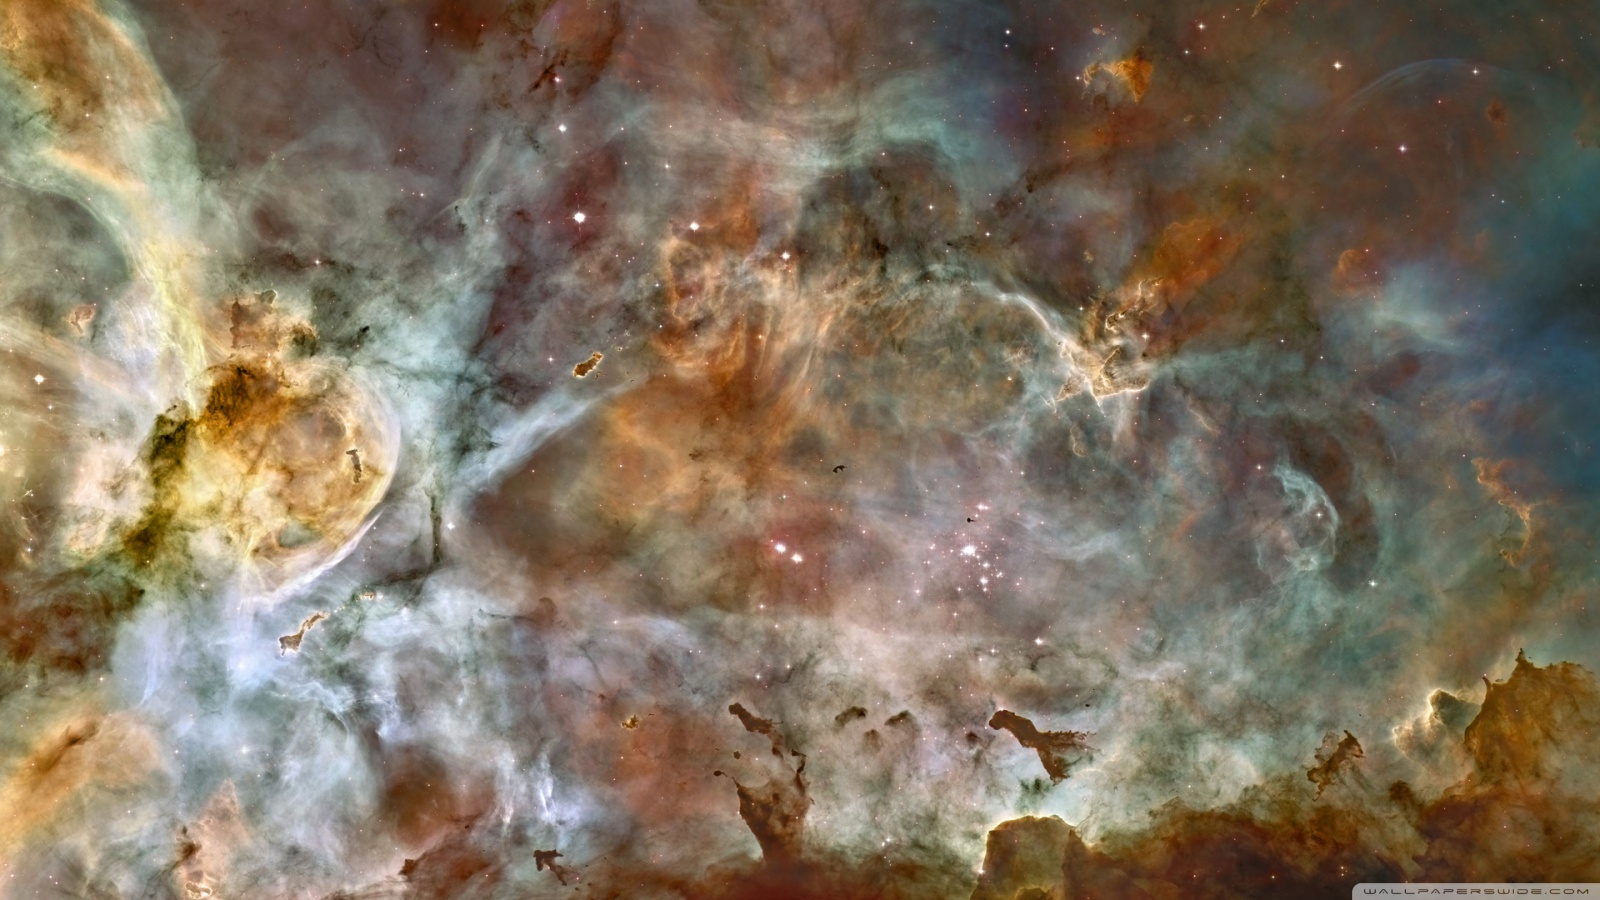 space fantasies - amazing_nebula.jpg